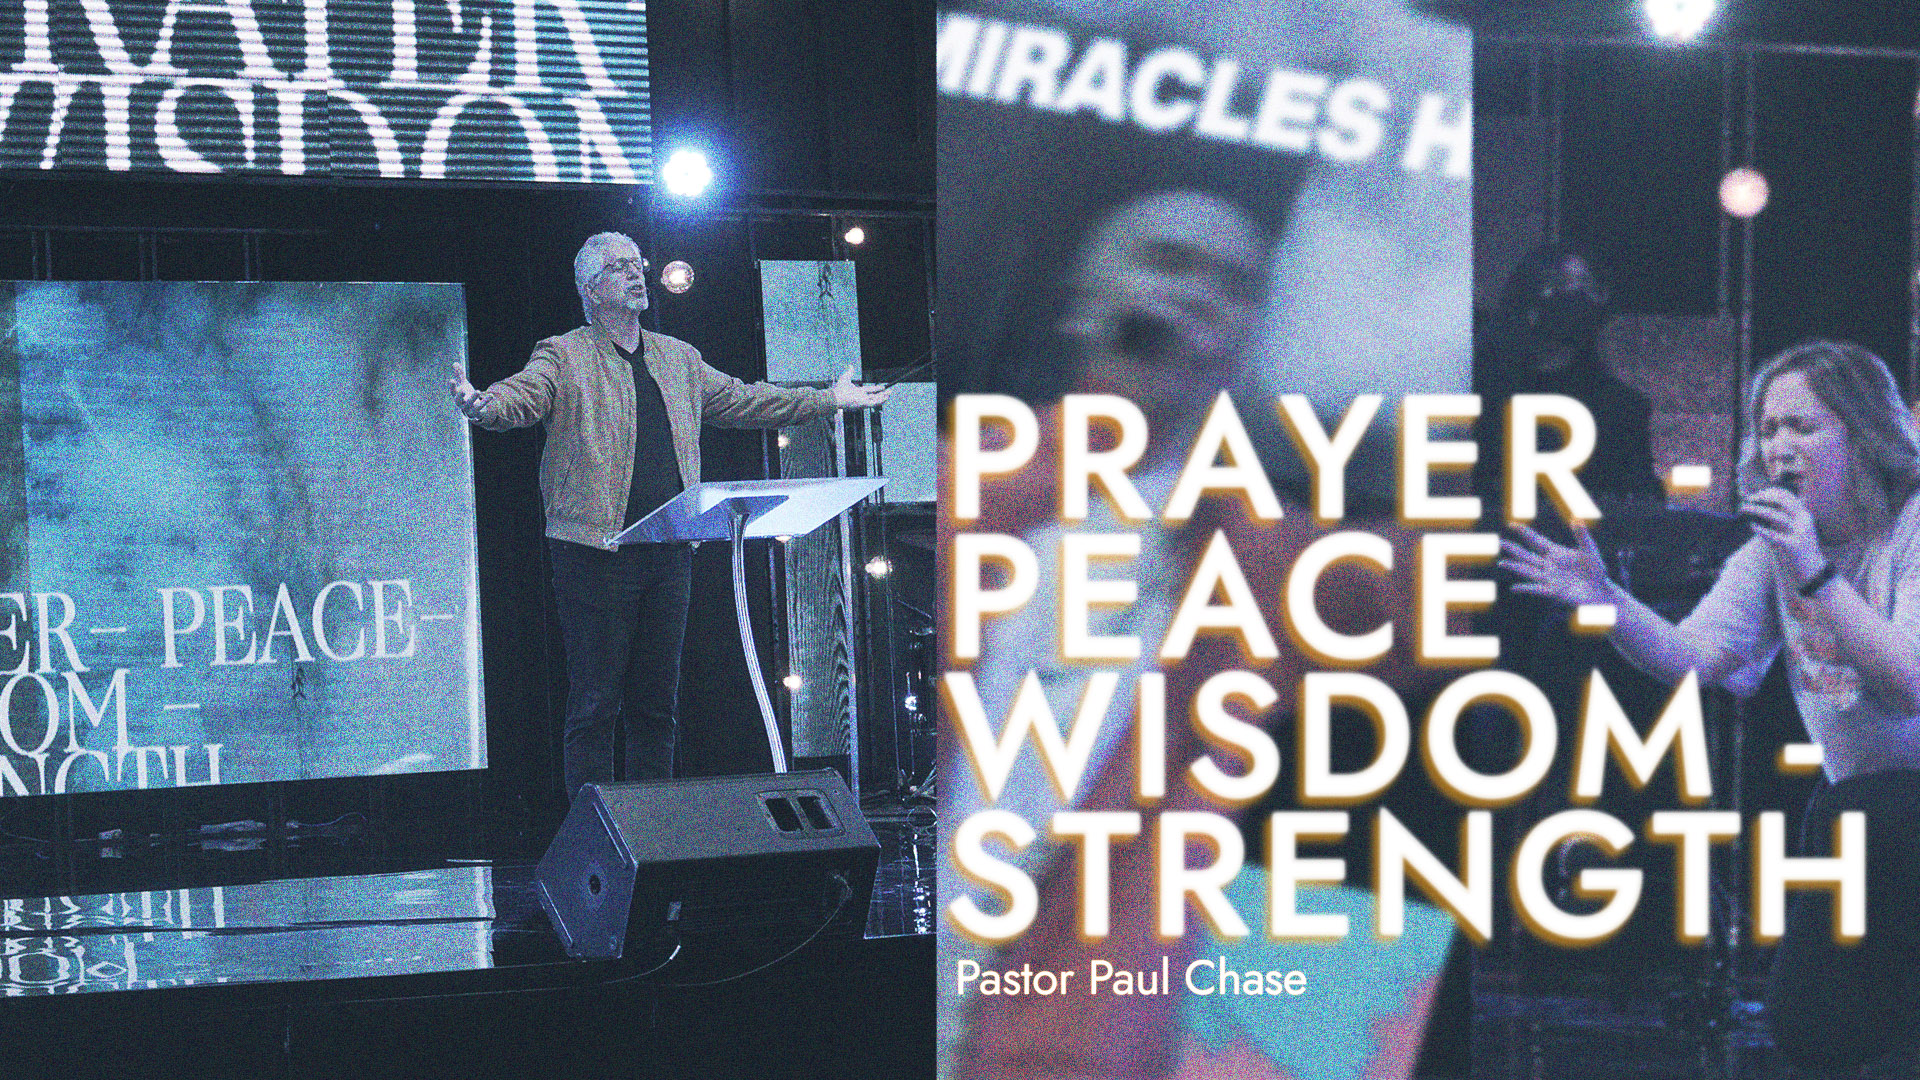 PRAYER - PEACE - WISDOM - STRENGTH